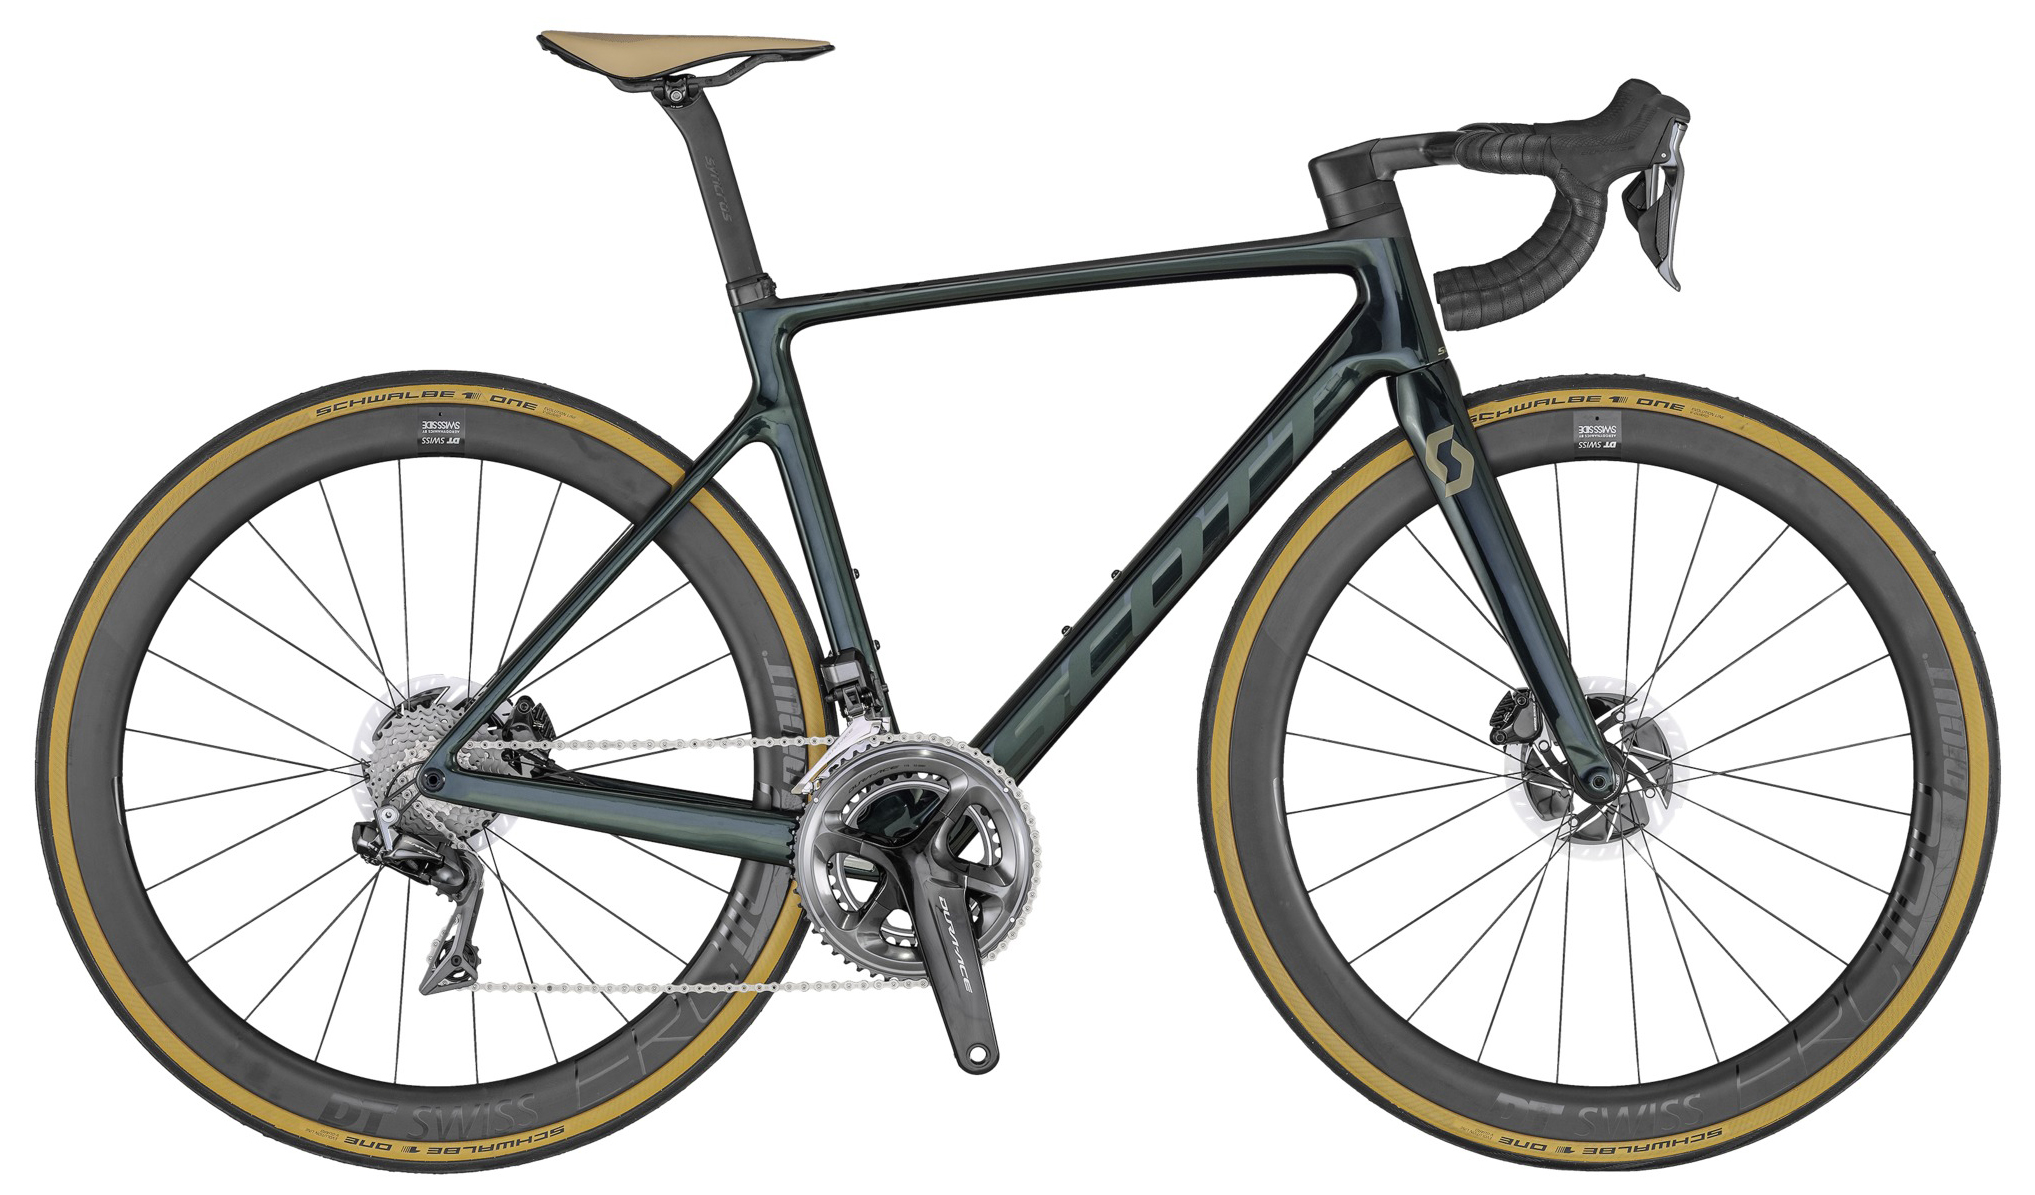  Отзывы о Шоссейном велосипеде Scott Addict RC Premium 2020